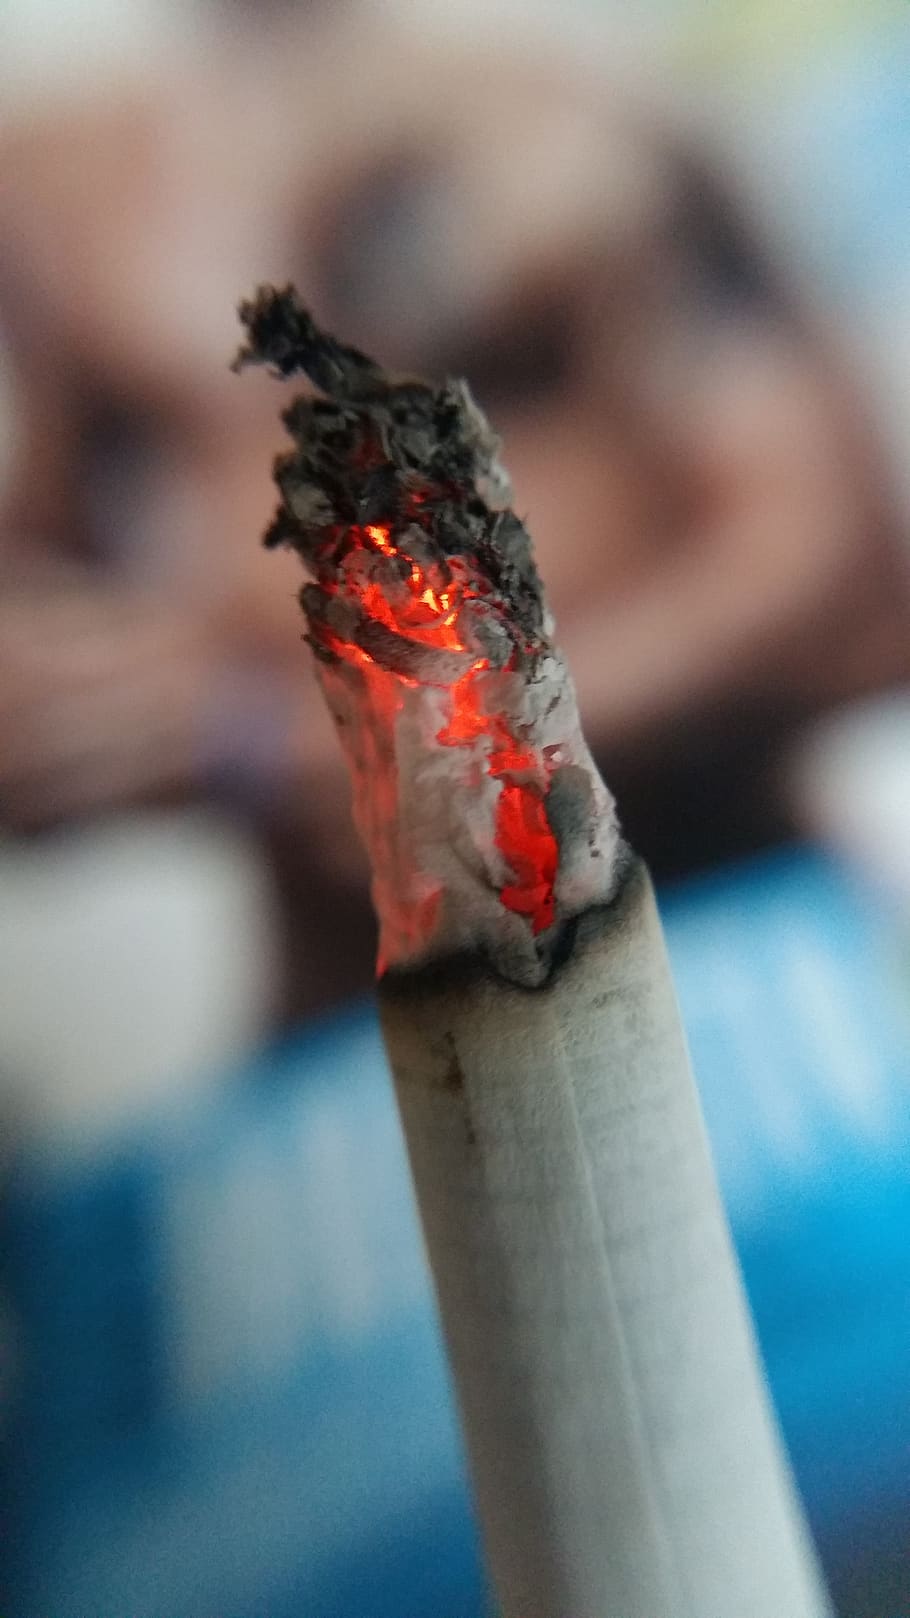 cigarro, fumaça, câncer, vício, fogo, fumo, vermelho, branco, cinza, queimadura